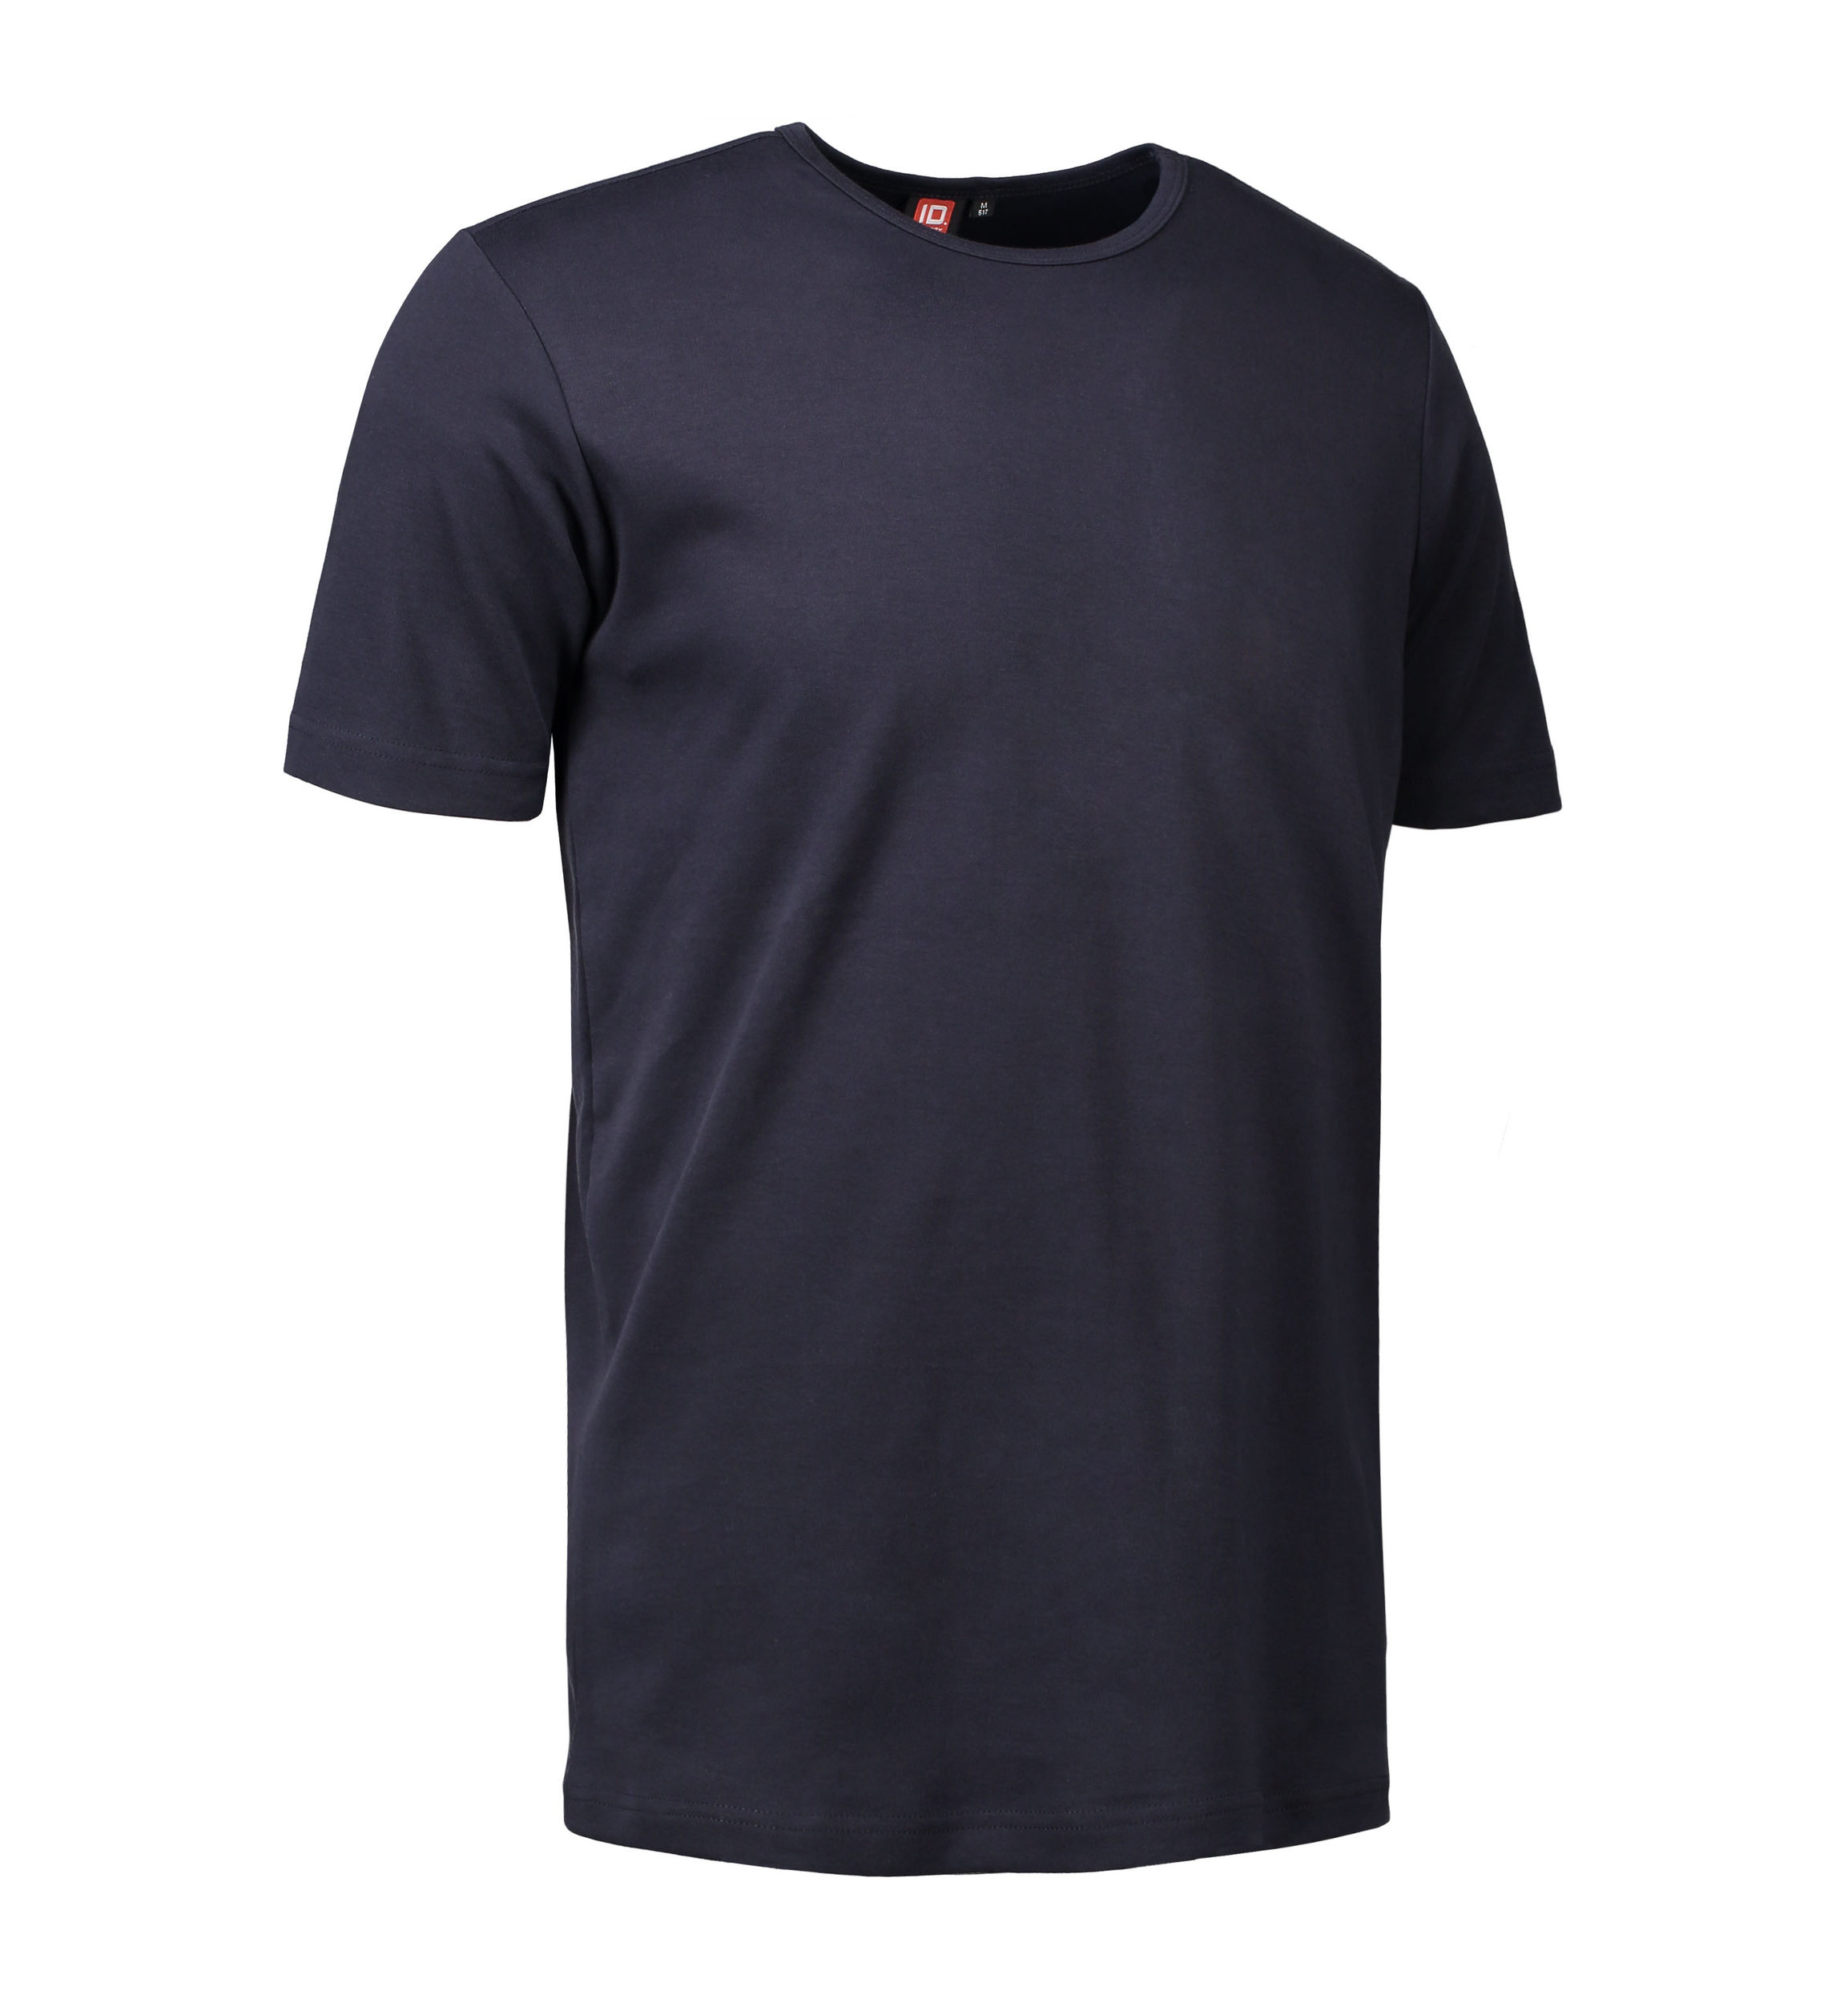 Billede af Navy t-shirt med rund hals til mænd - S hos Sygeplejebutikken.dk